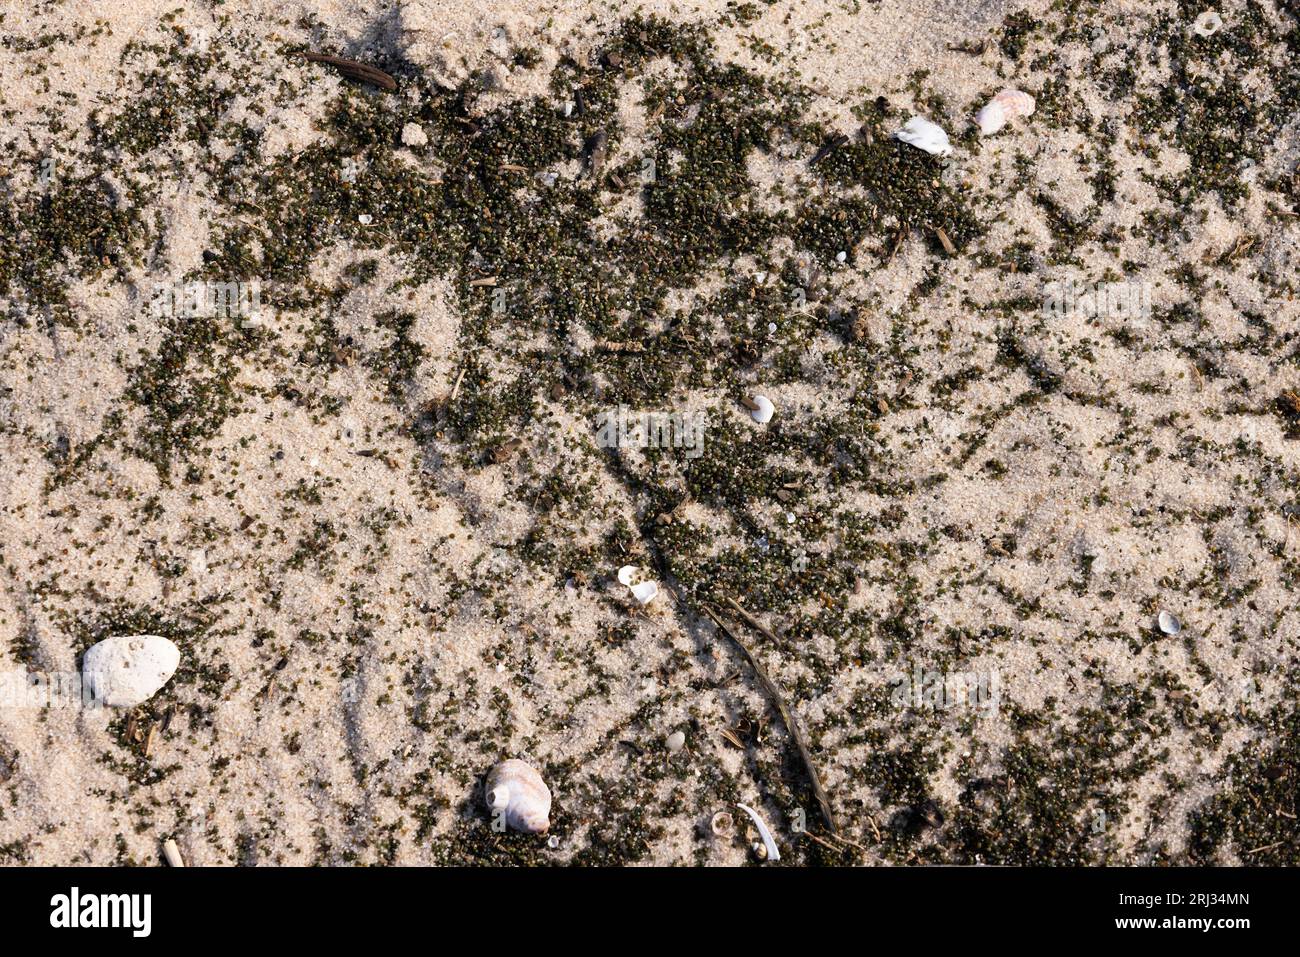 Atlantic Horseshoe Cangrejo Limulus polyphemus, huevos puestos en la playa de arena, Reeds Beach, Nueva Jersey, EE.UU., mayo Foto de stock